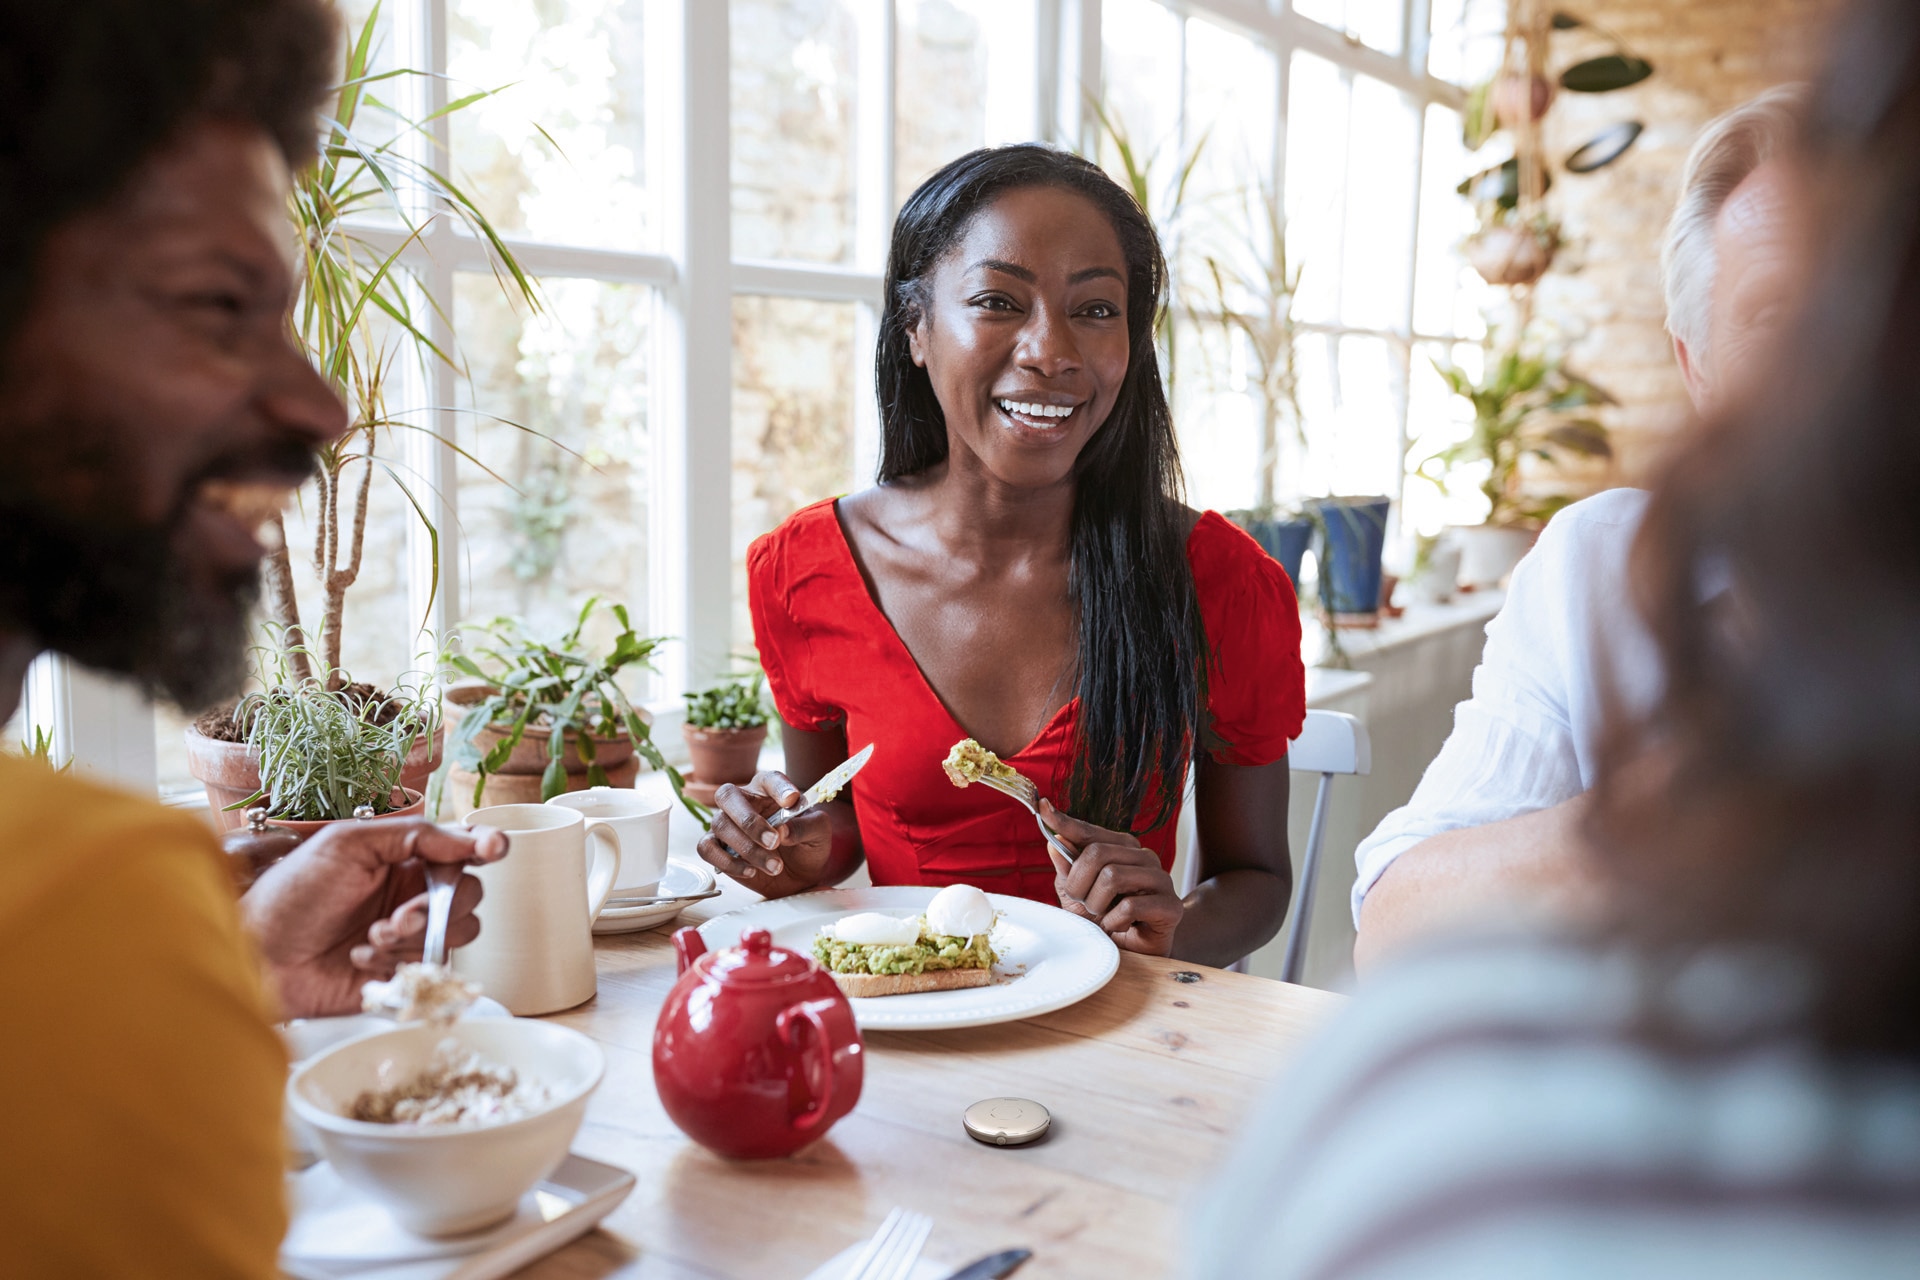 Mujer joven y en forma comiendo algo sano mientras mantiene una alegre conversación con otras personas alrededor de una mesa. Tiene un Roger Select frente a ella.